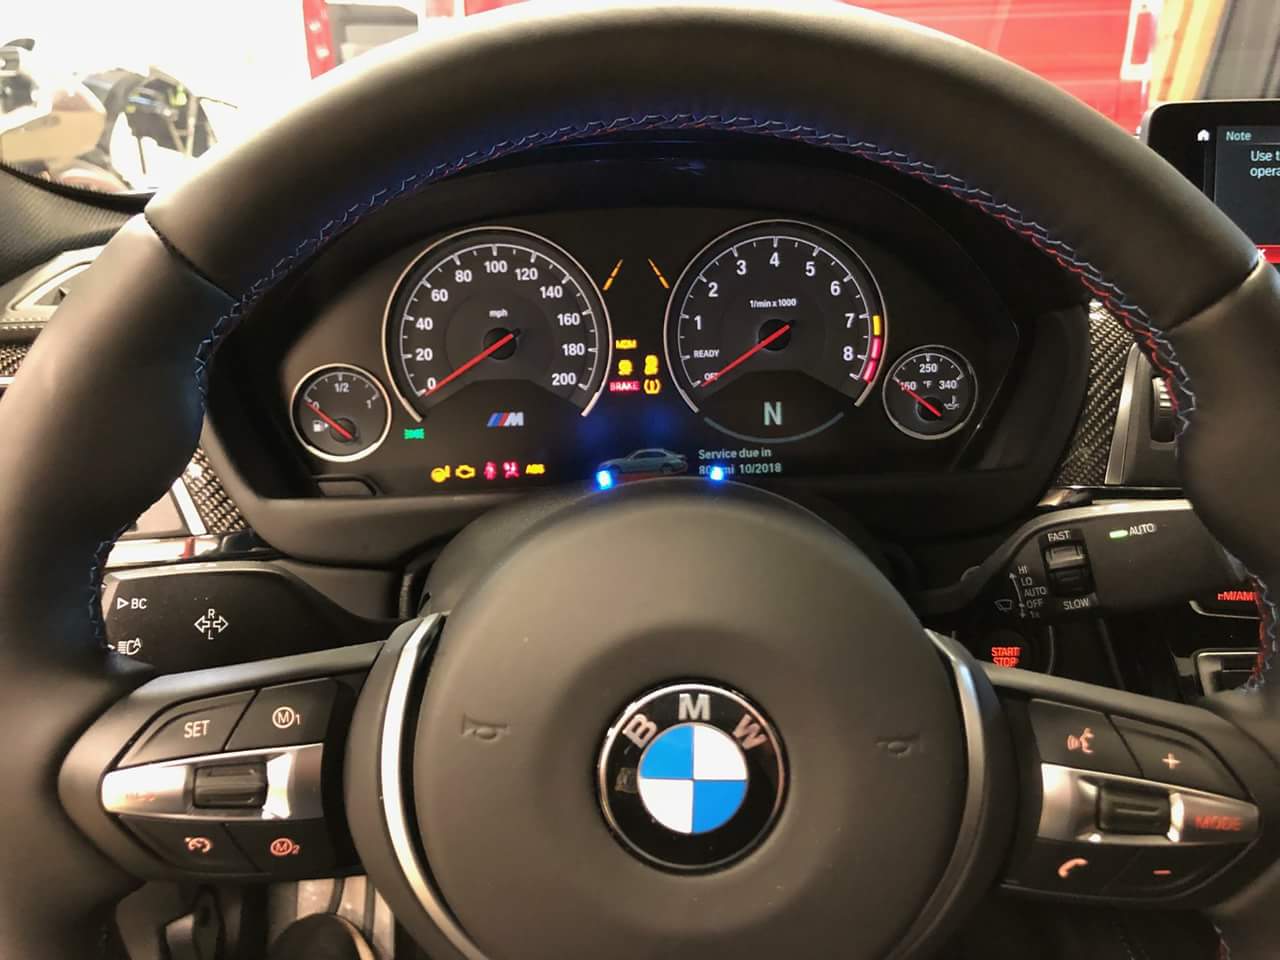 K40 radar detector blue alert leds on a 2018 BMW M3